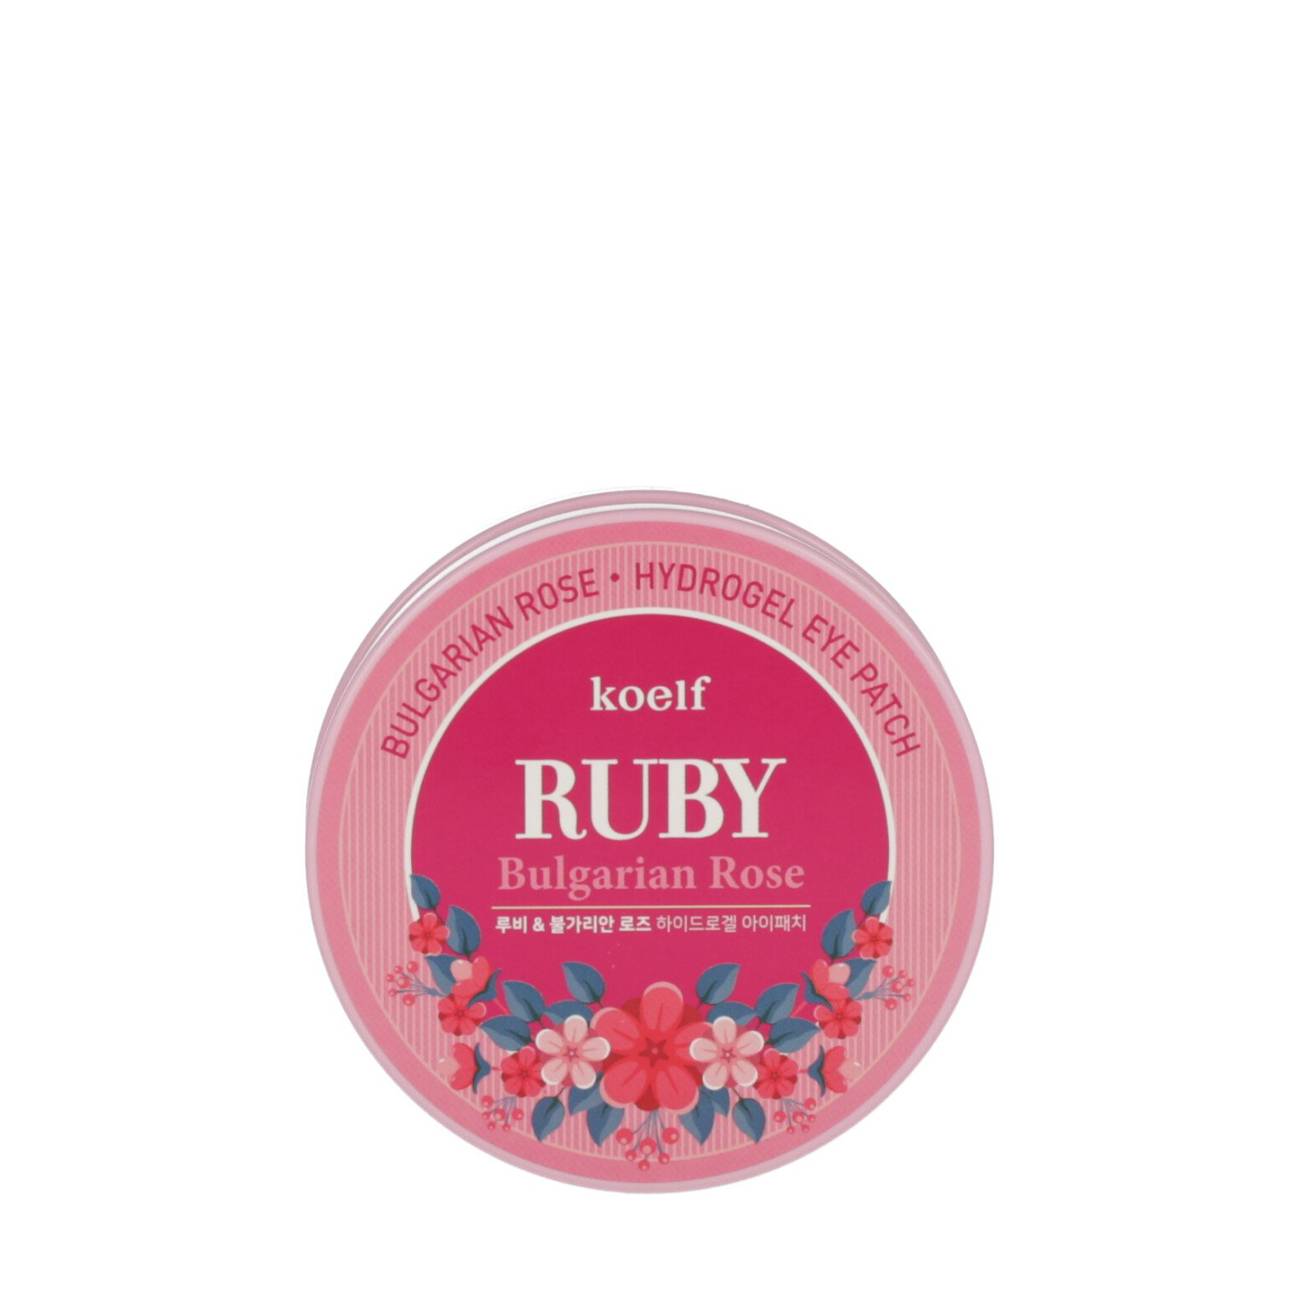 Ruby & Bulgarian Rose Eye Patch – 60 Pieces original Koelf bestvalue